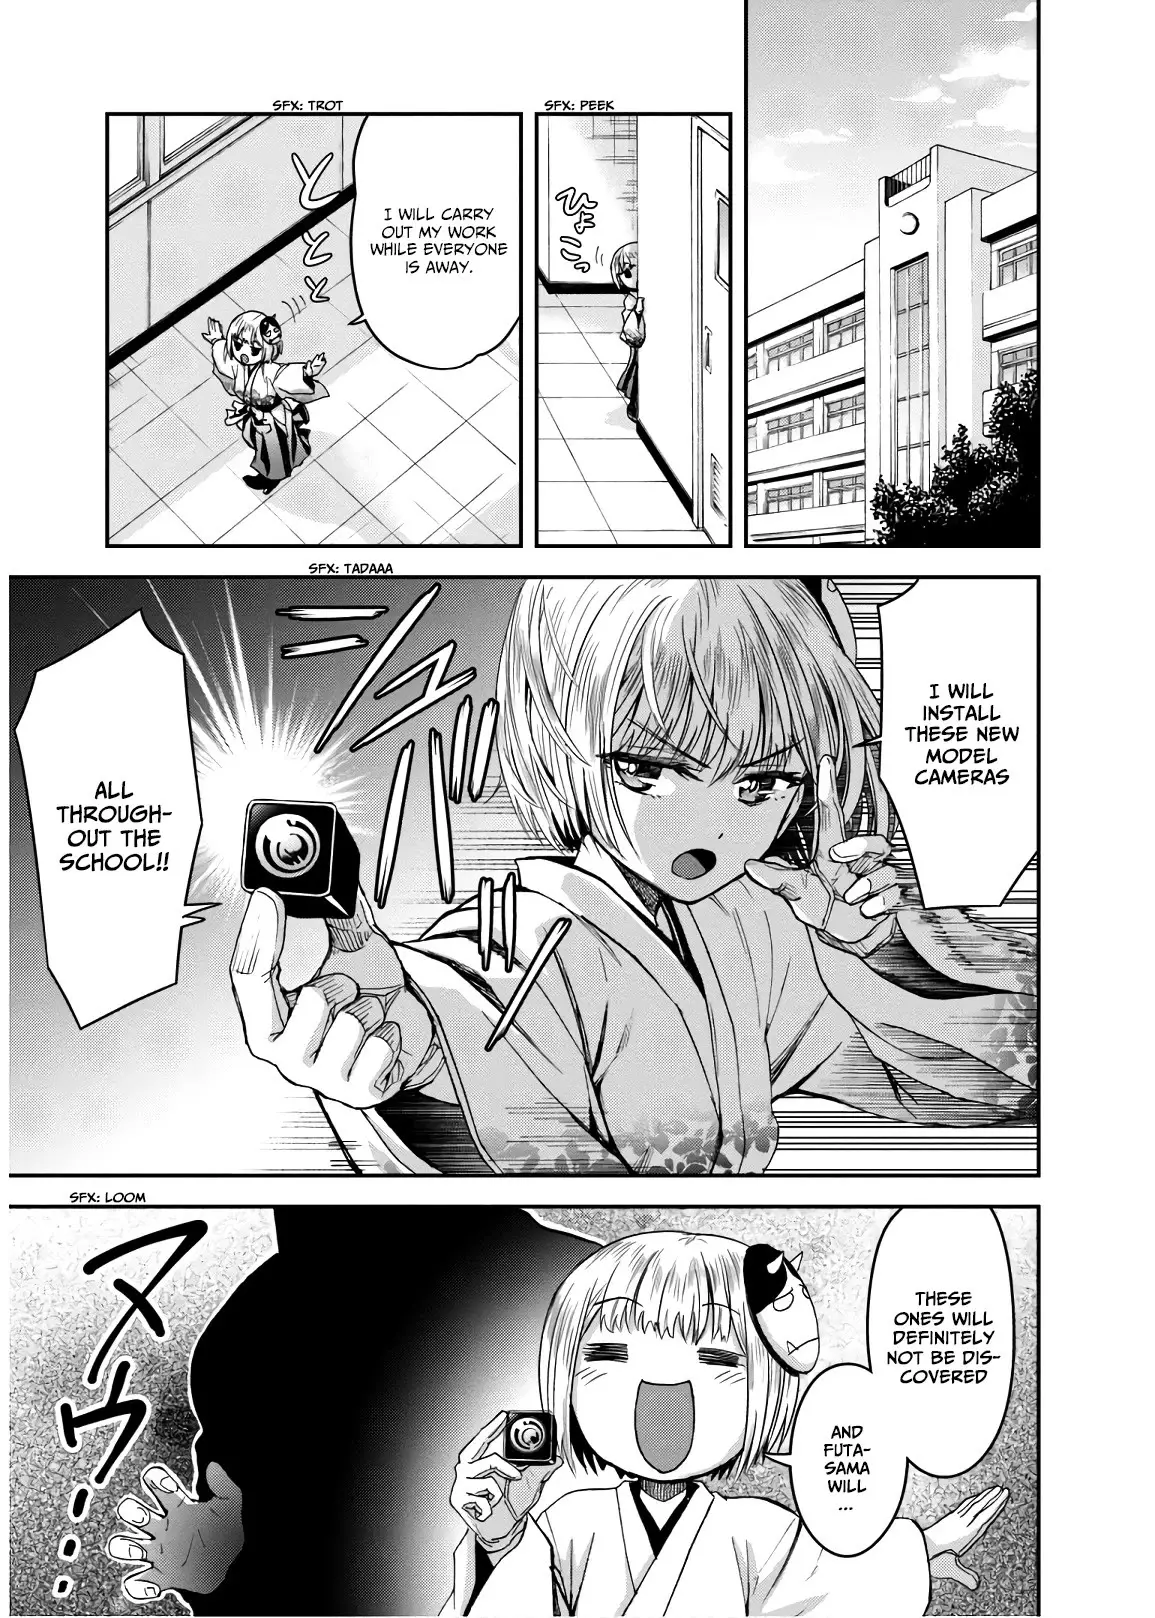 Shinobi Kill - 5 page 38